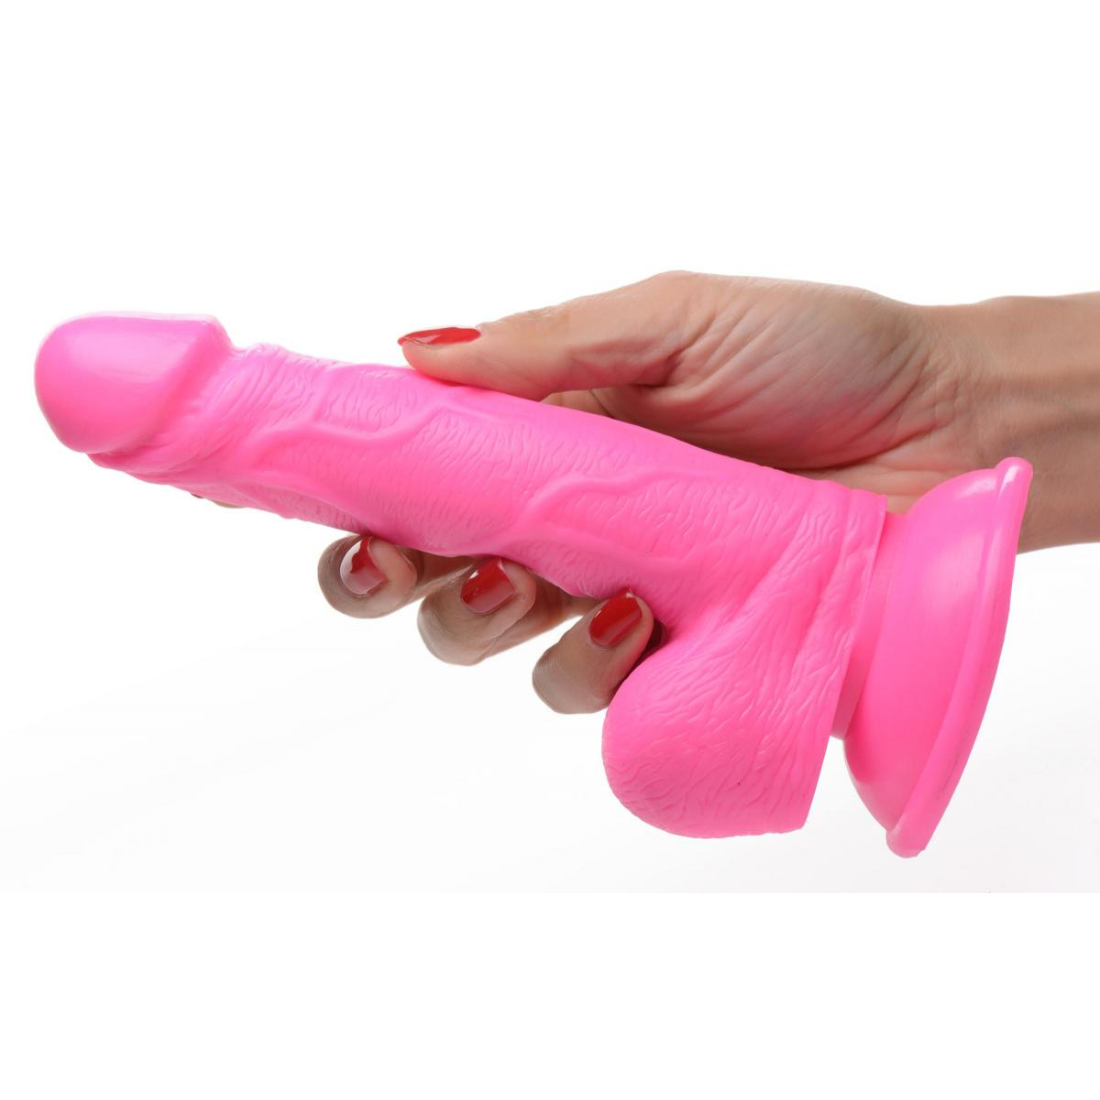 16.5 cm lange, roze dildo van het merk Pop Peckers. Perfect voor gay mannen en te koop bij Flavourez.